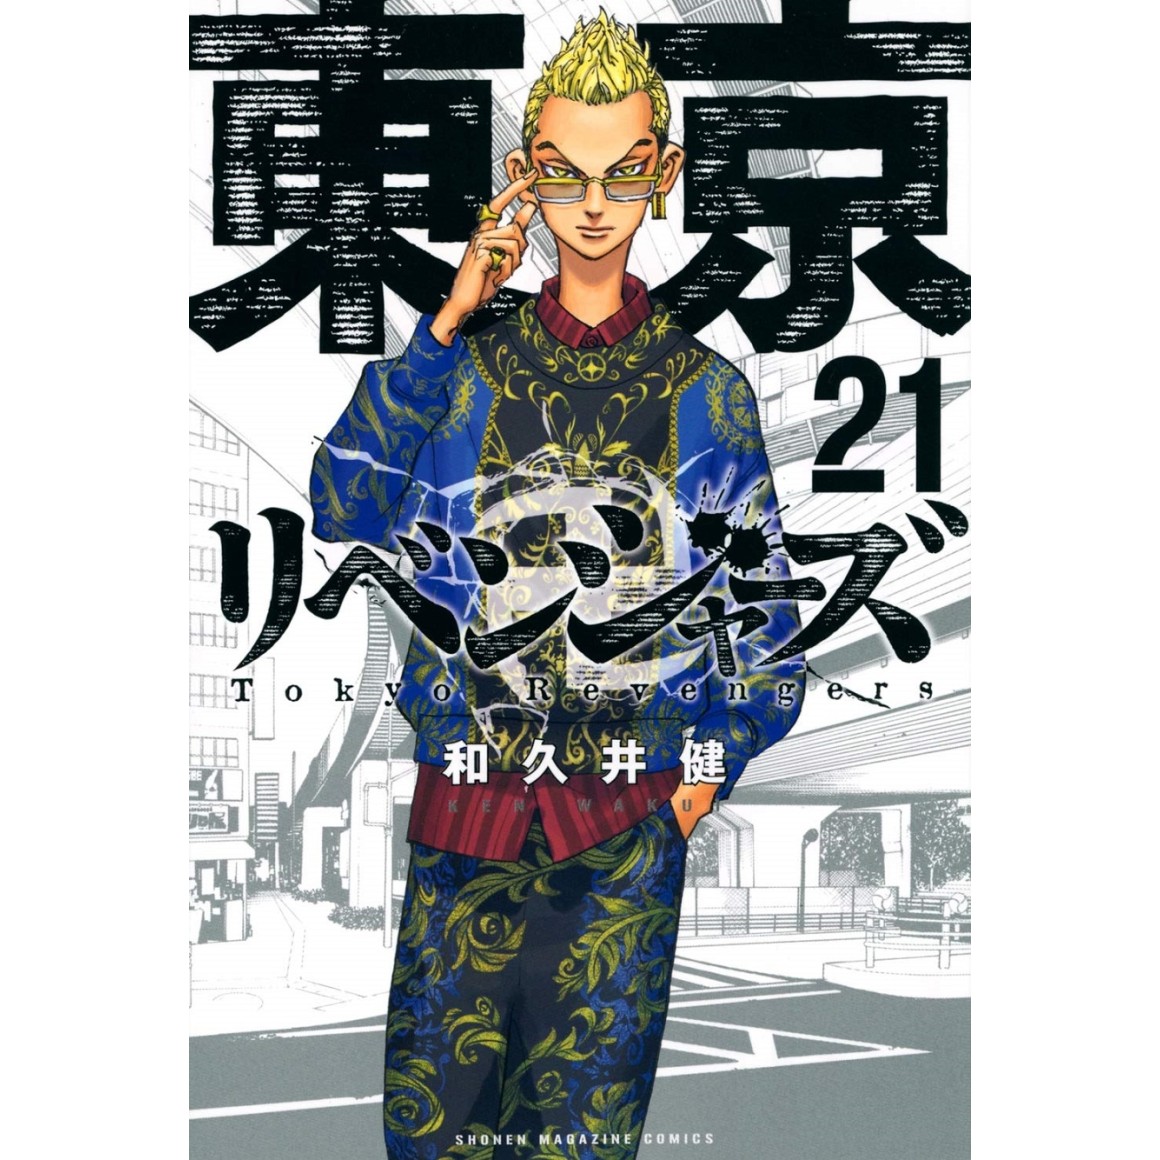 Tokyo Revengers - Letter from Keisuke Baji Vol.2 - ISBN:9784065303498